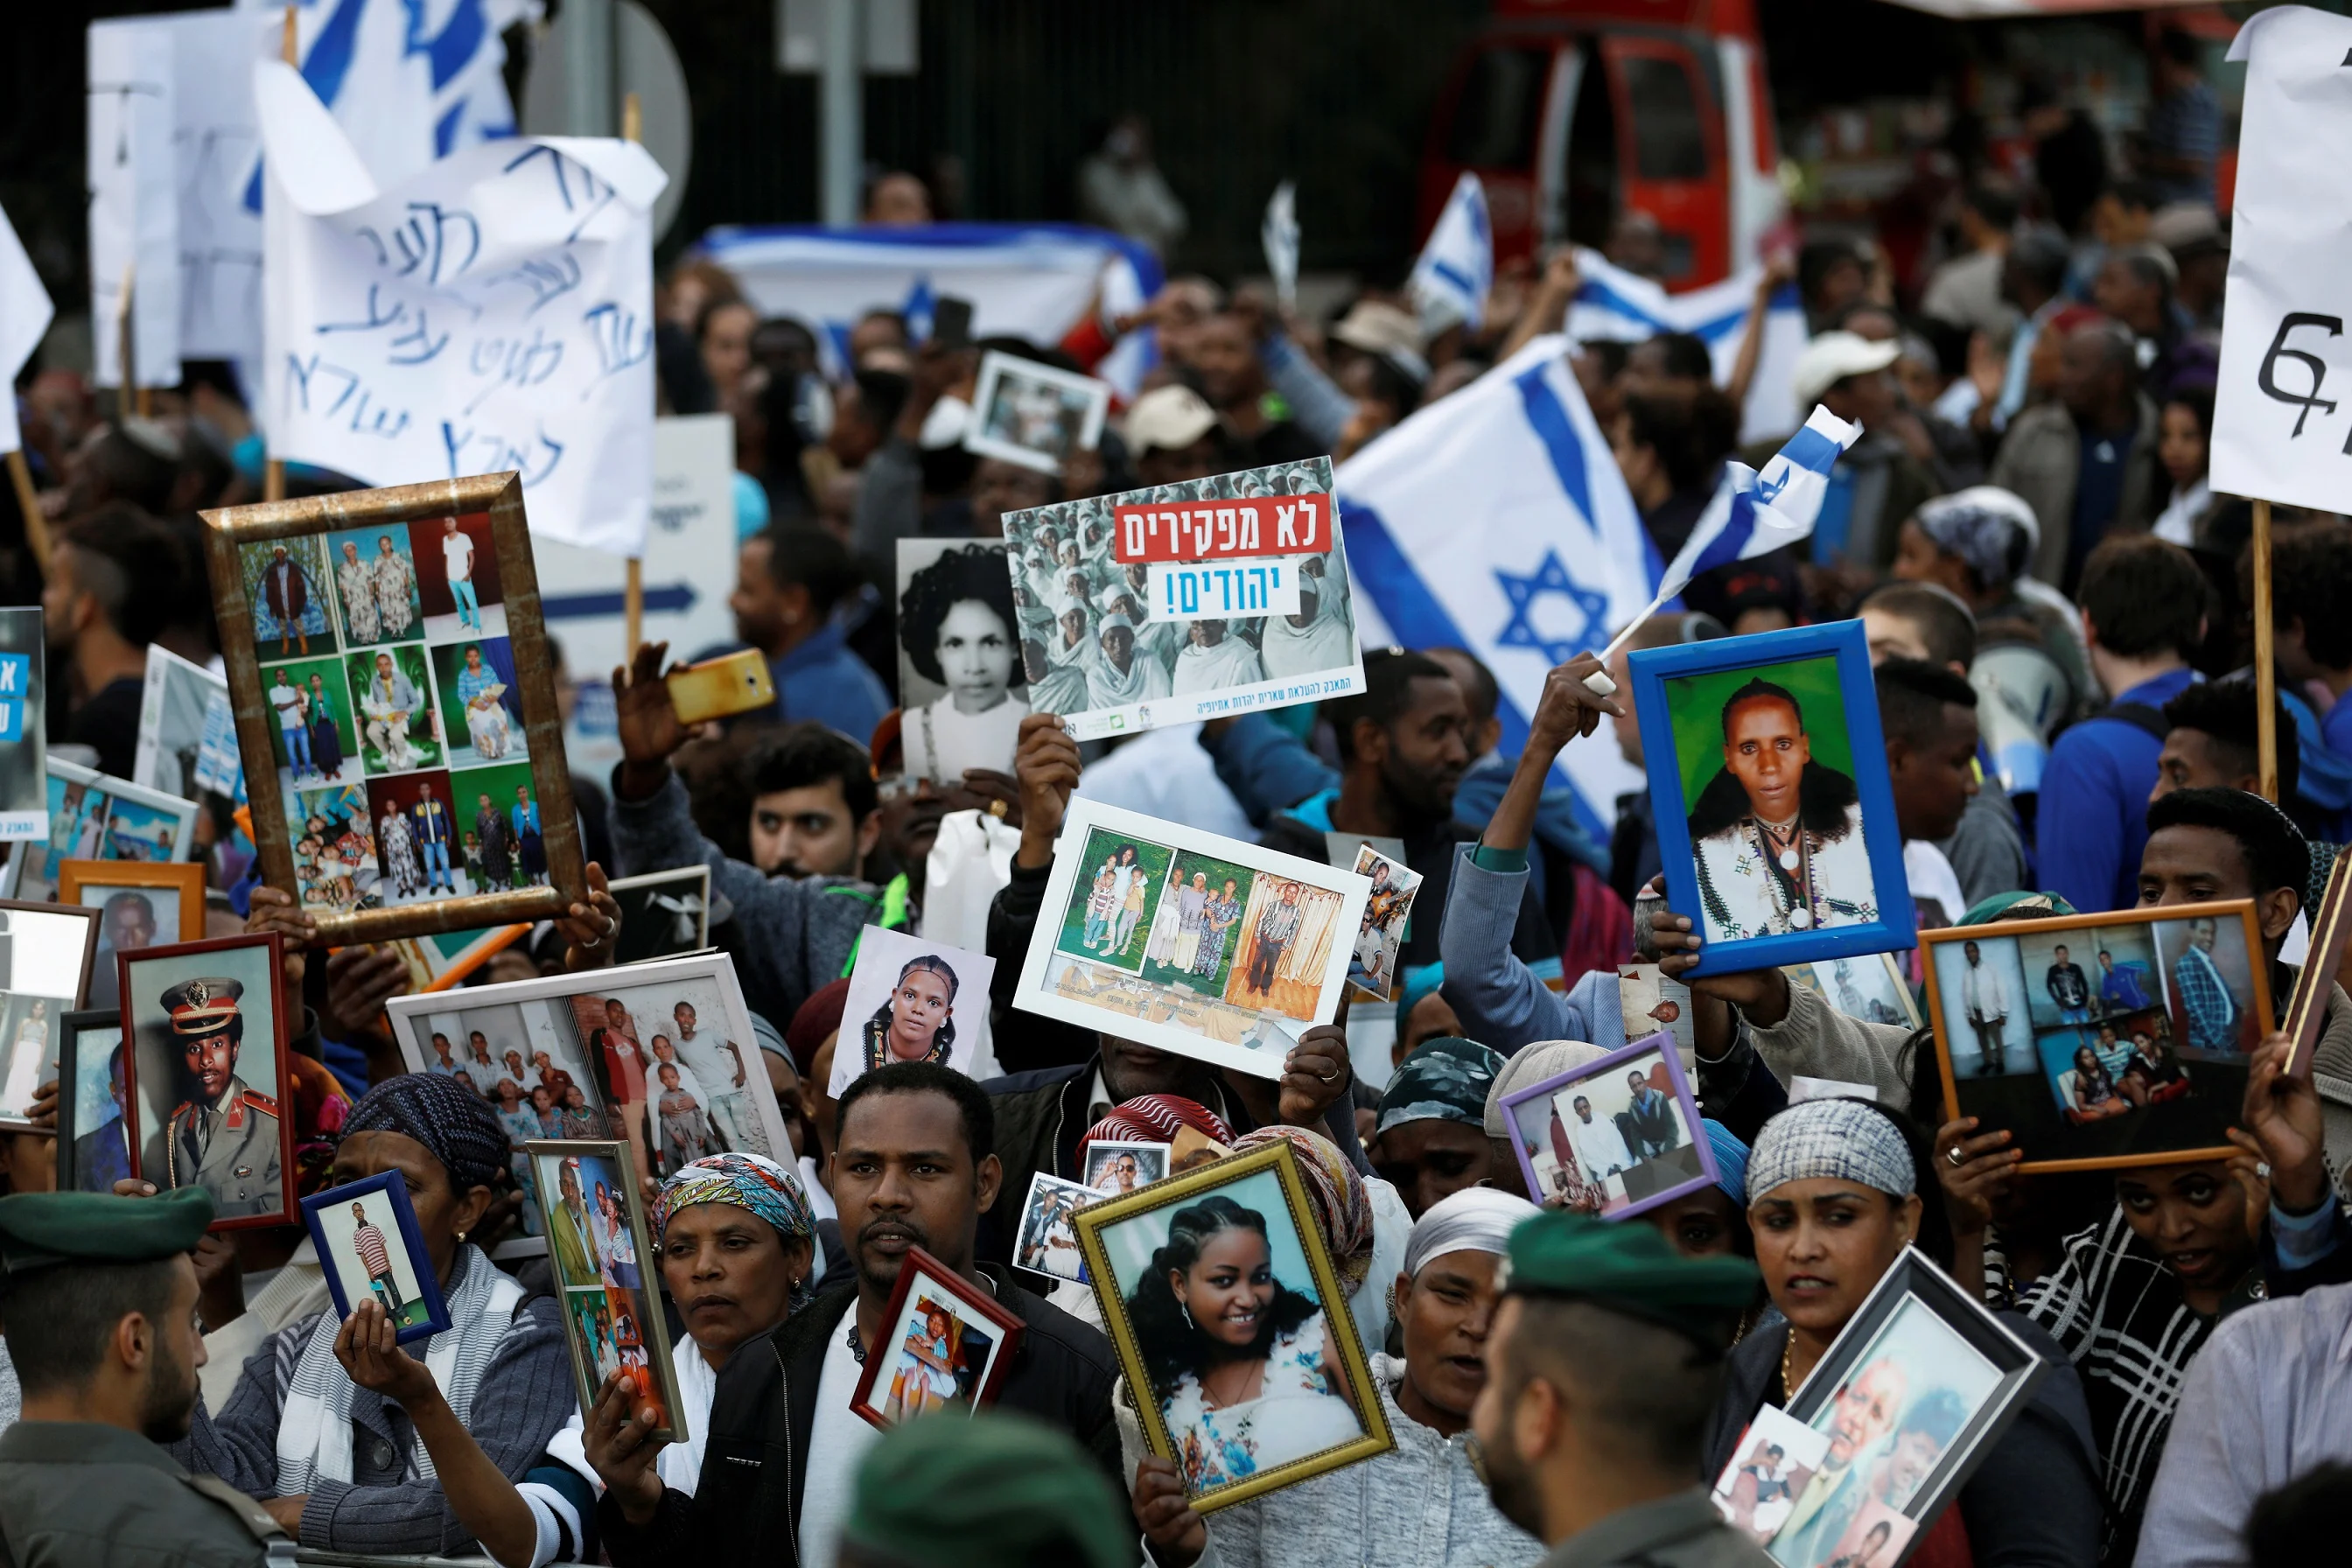 הפגנה למען העלאת בני הפלשמורה לישראל